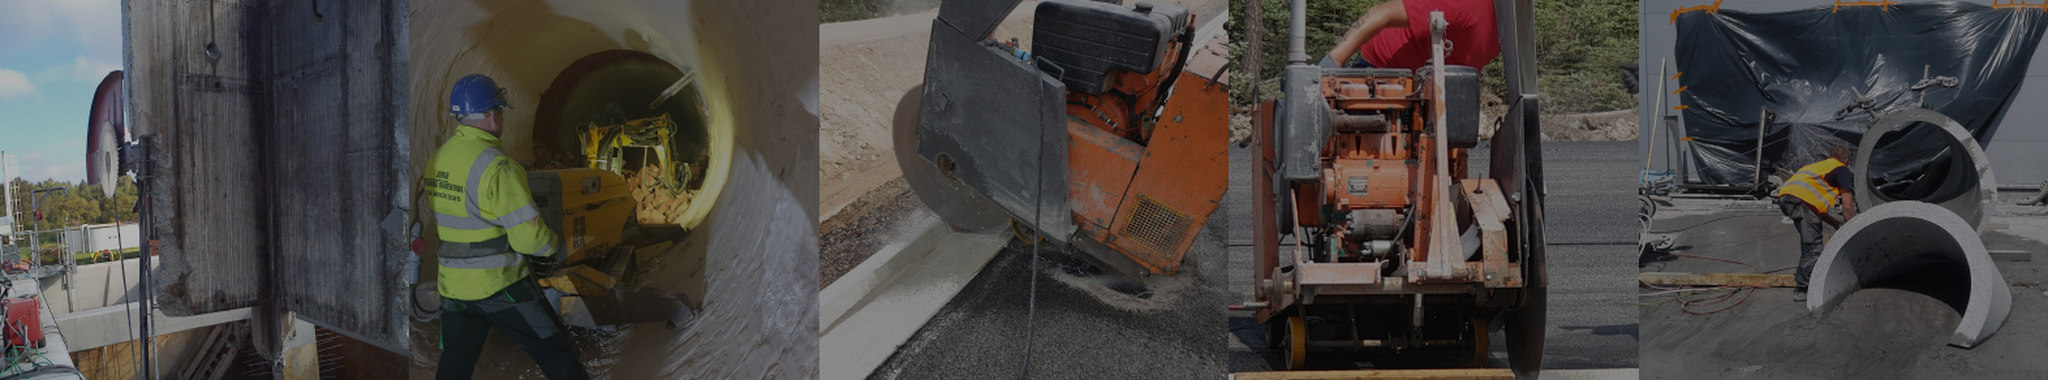 Cutting concrete